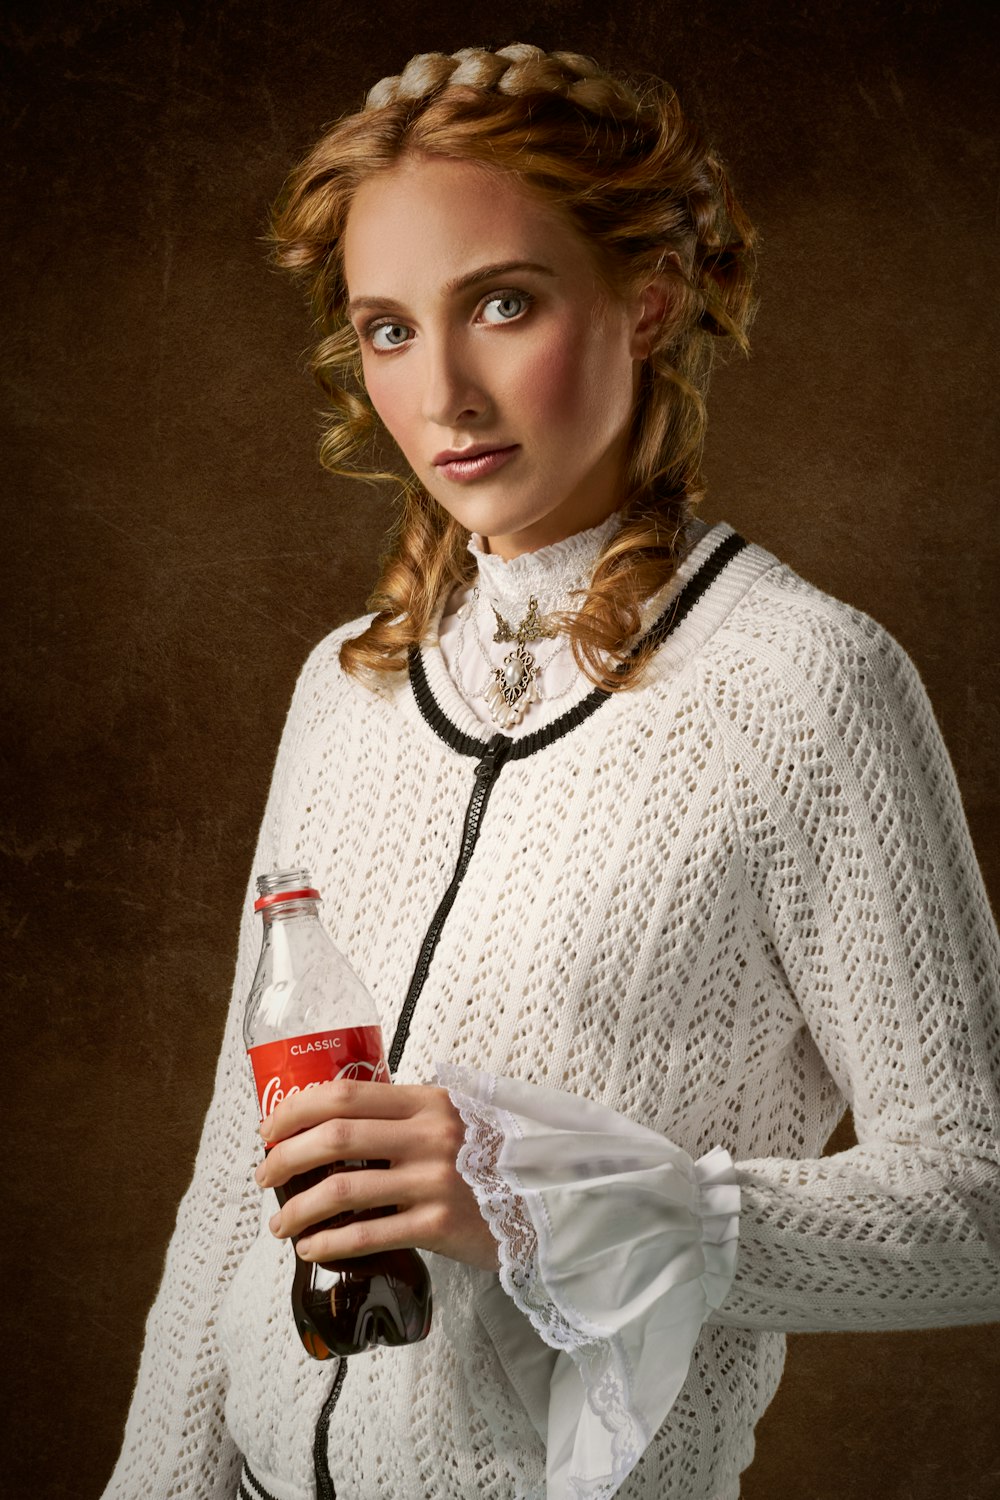 woman holding Coke bottle